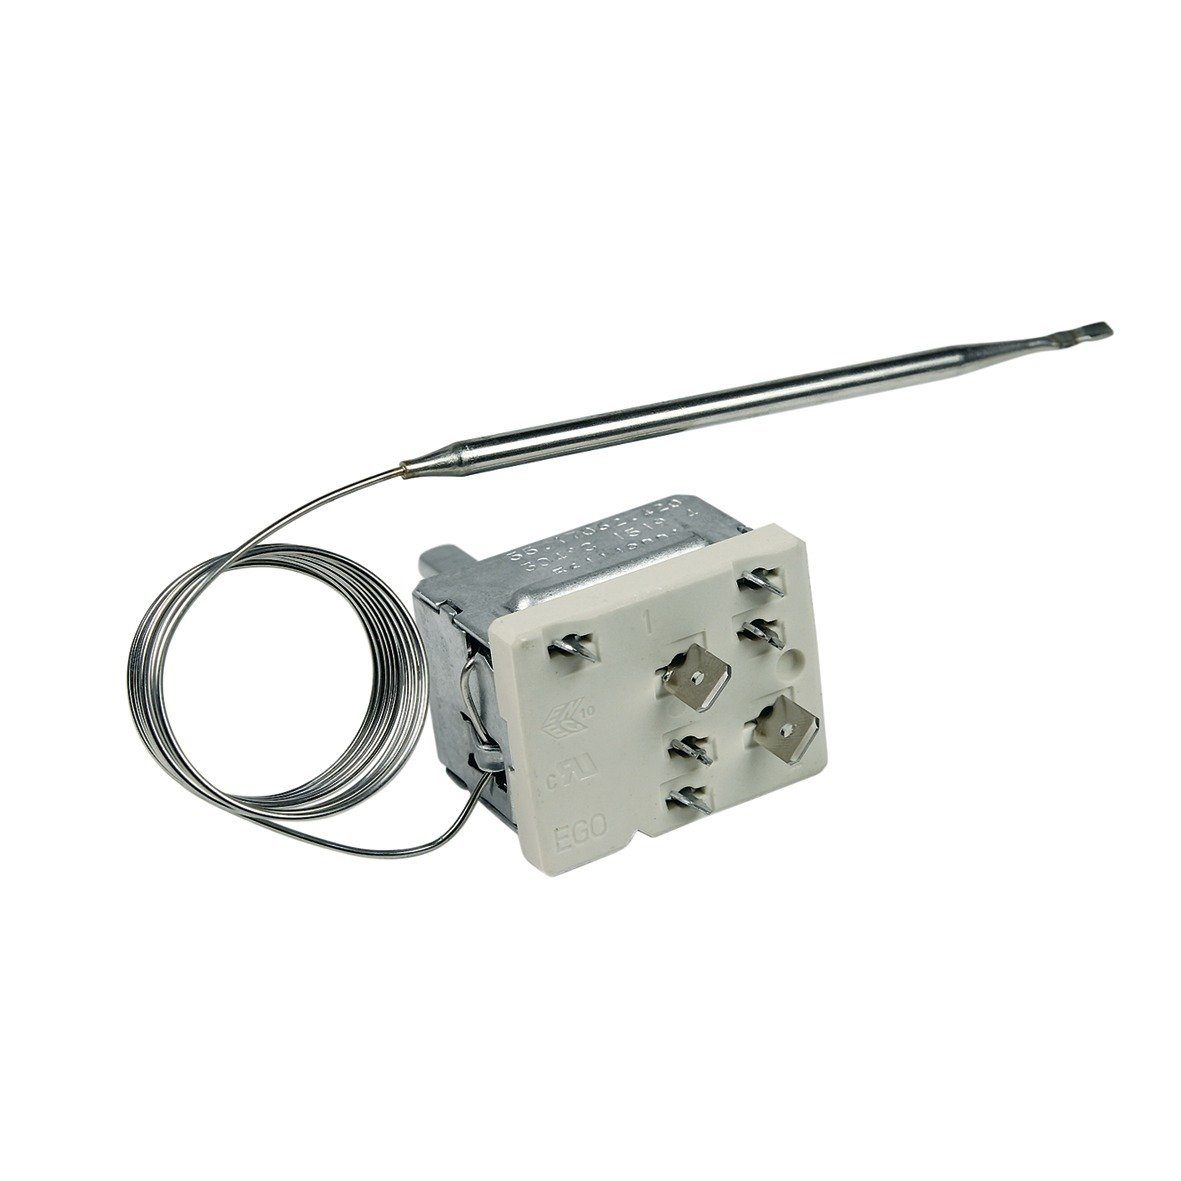 5611490011 Für Backofen Regler, wie Electrolux easyPART Herd Thermostat Thermodetektor /